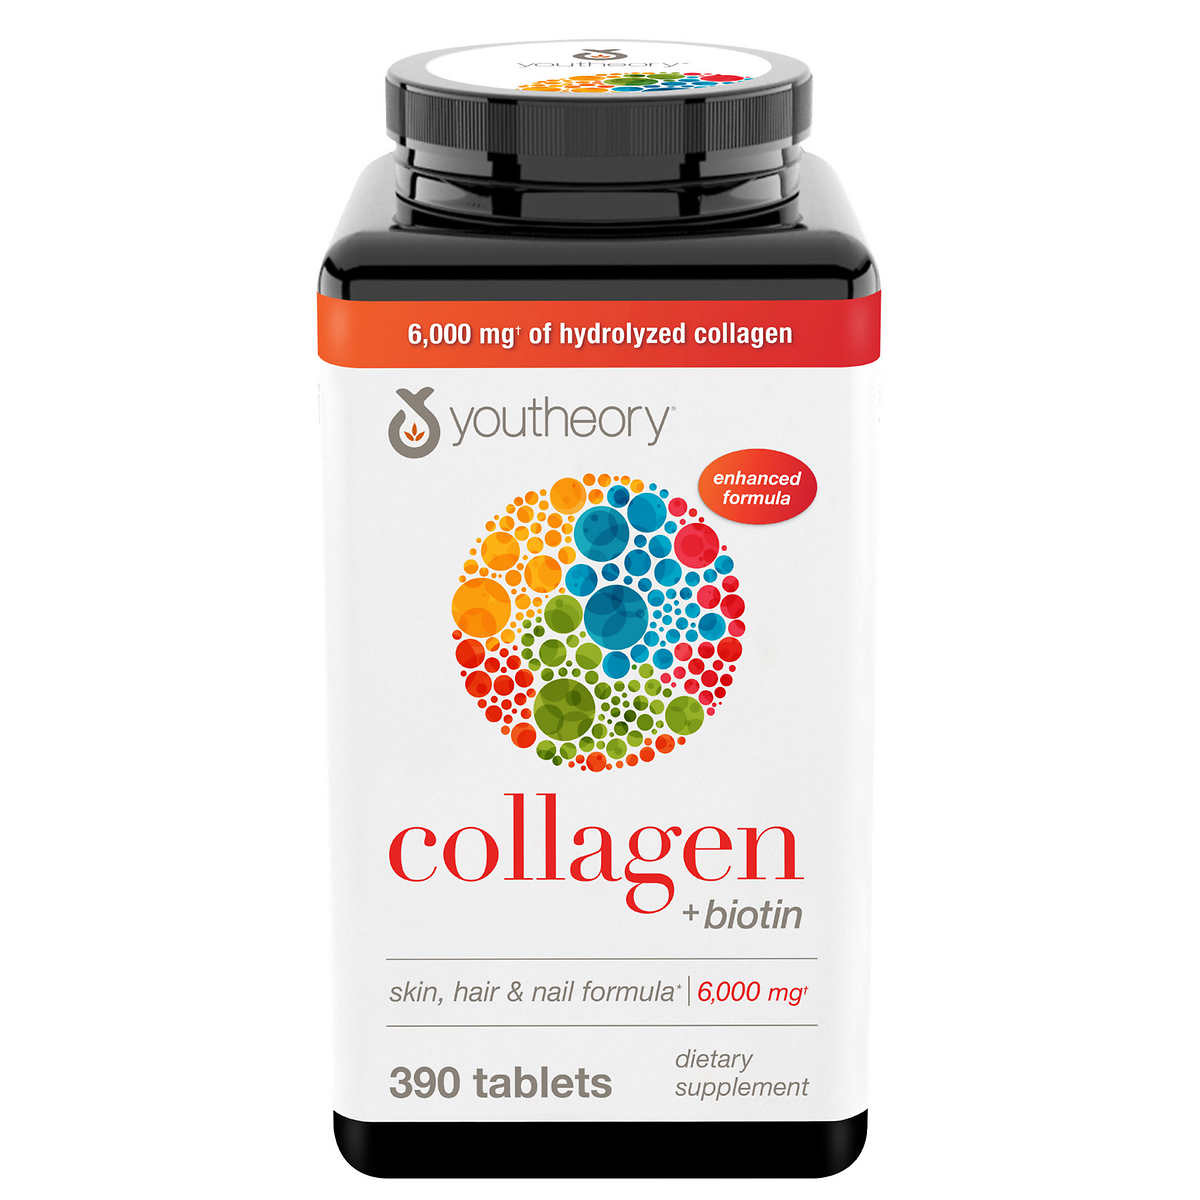 Giới tính nào nên sử dụng cách uống collagen 6000mg?
